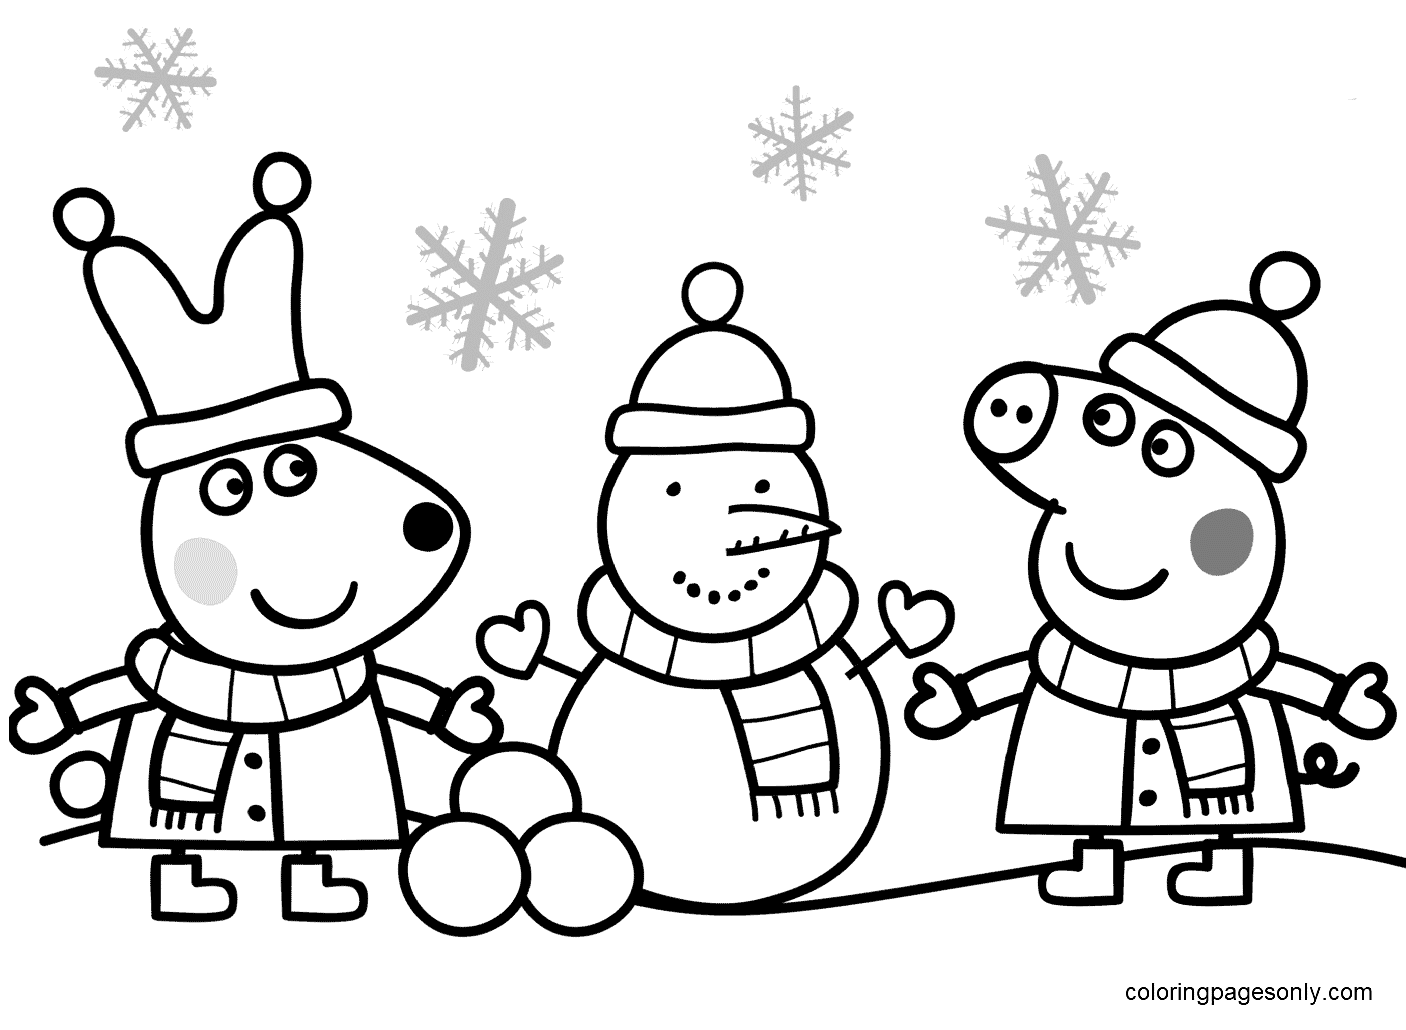 Peppa und Rebecca basteln einen Schneemann aus Peppa Pig